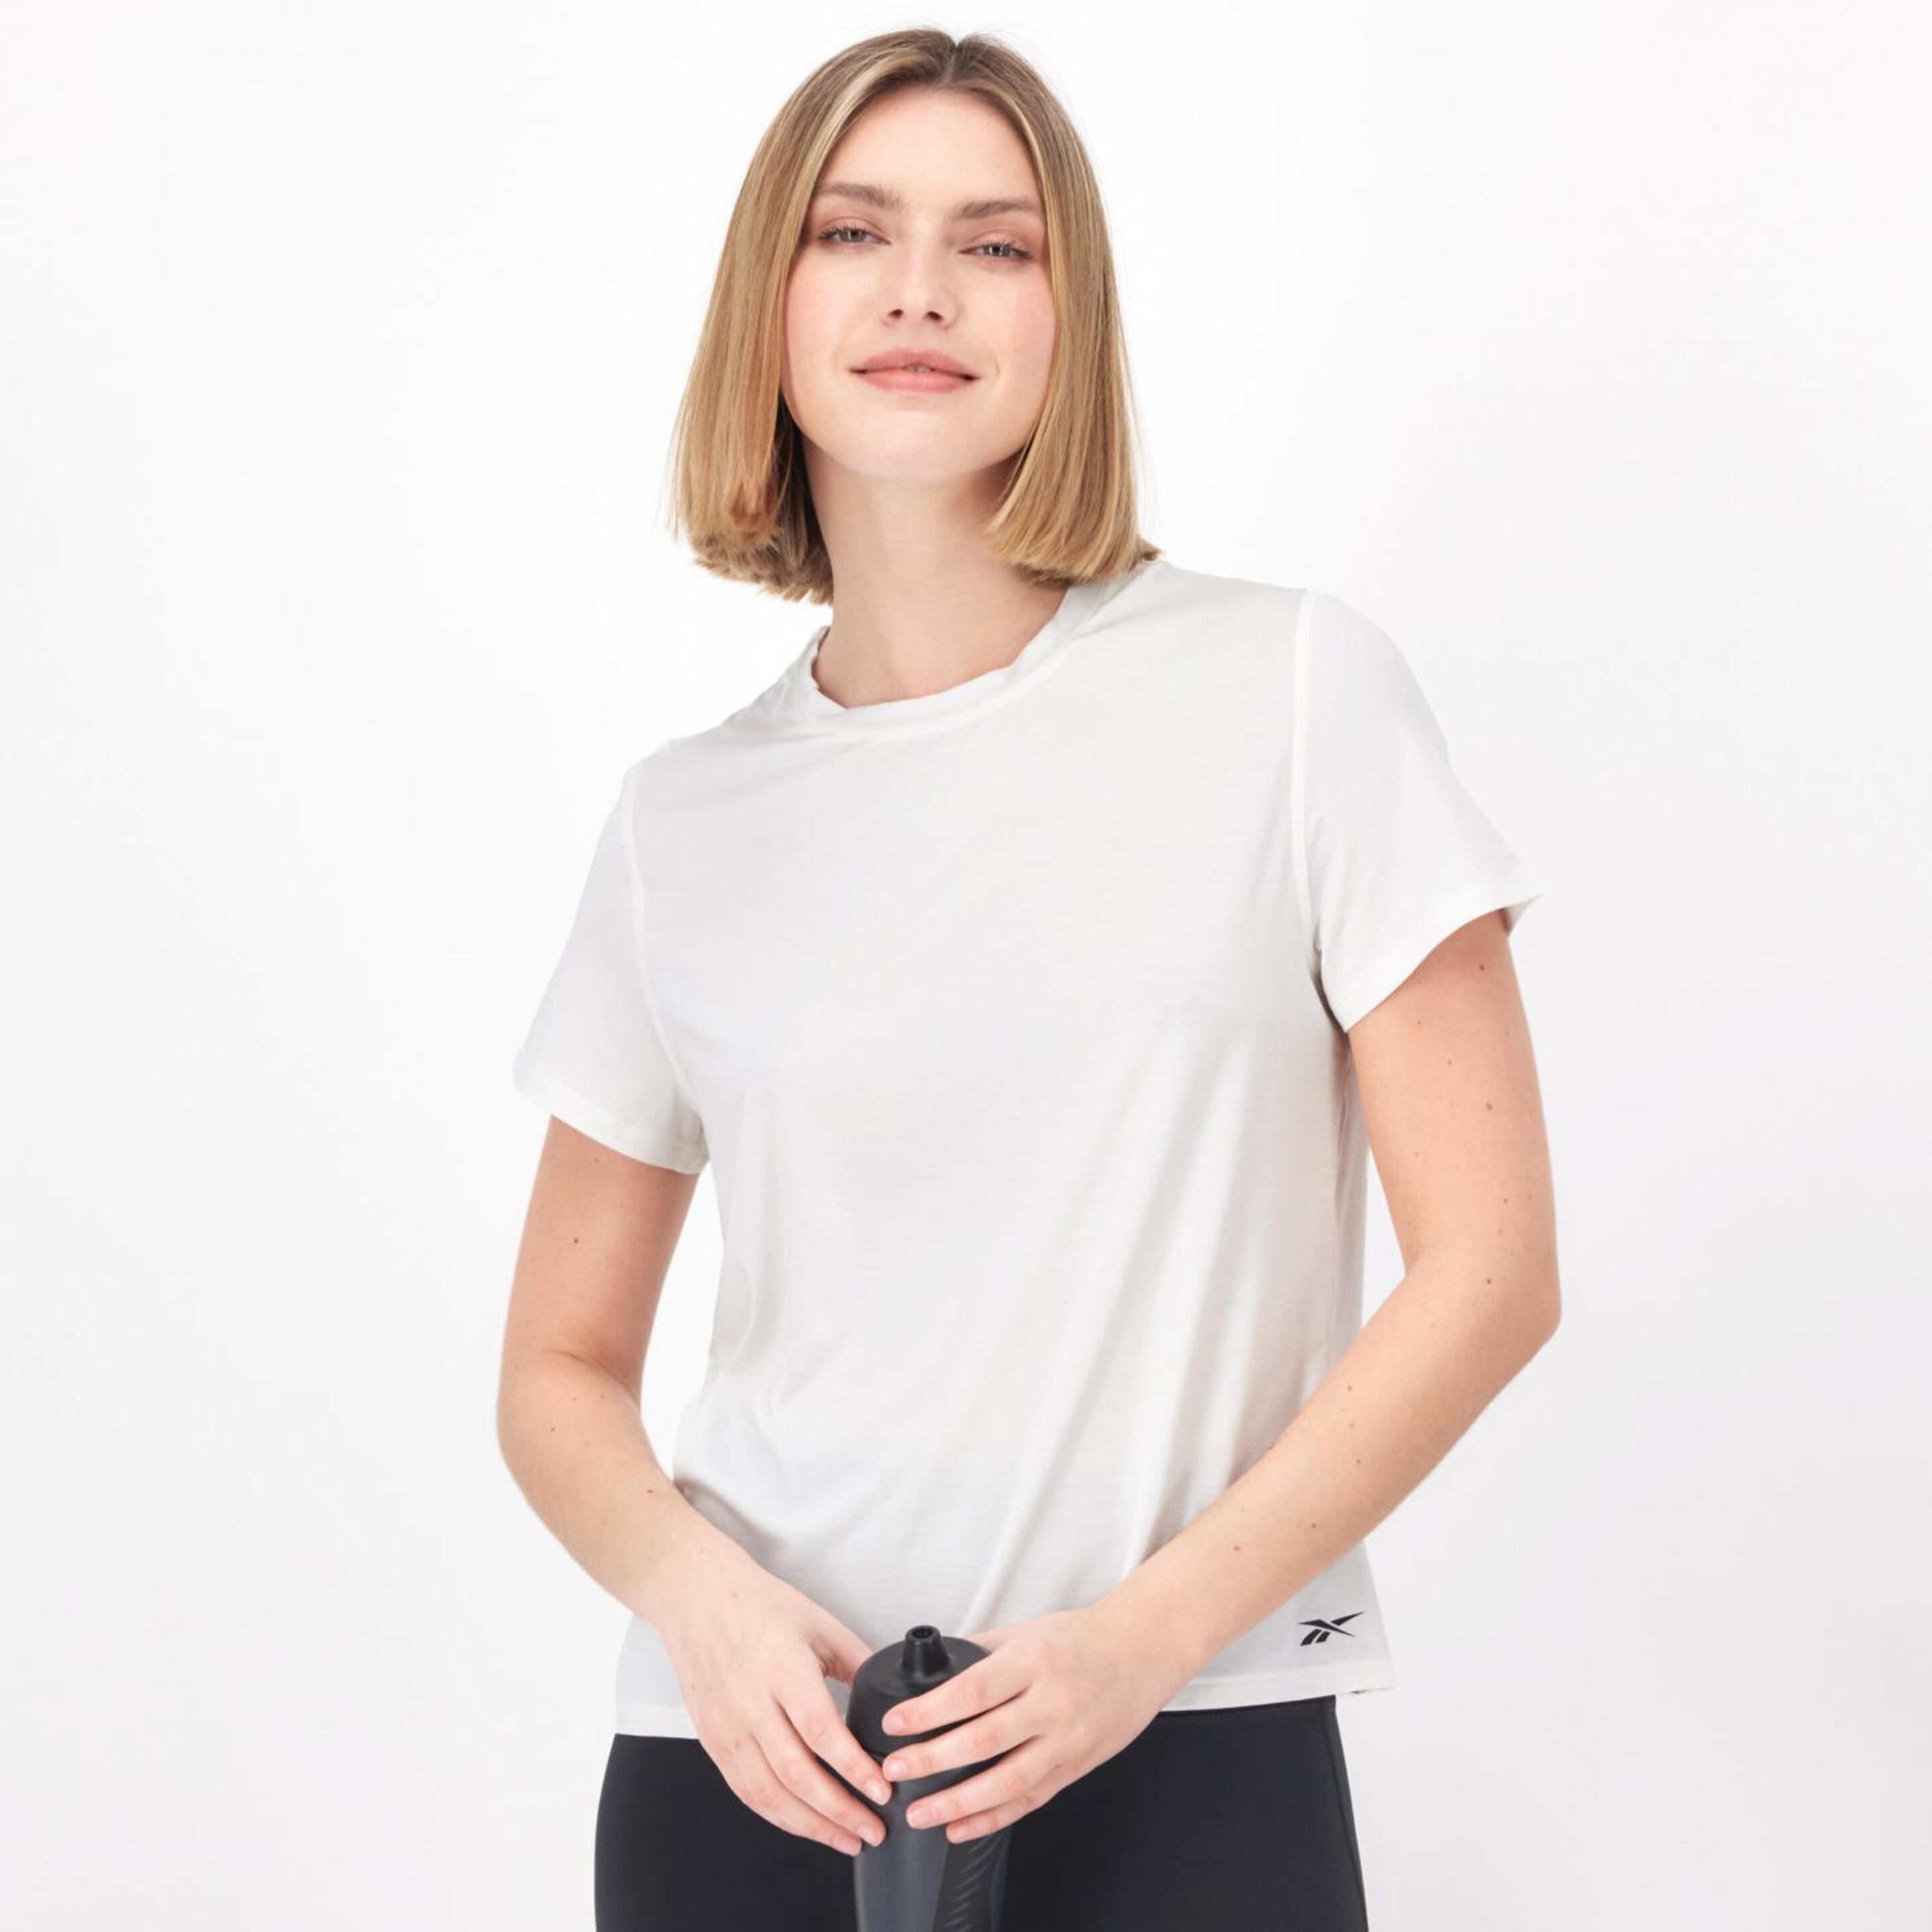 Camiseta Reebok - blanco - Camiseta Running Mujer